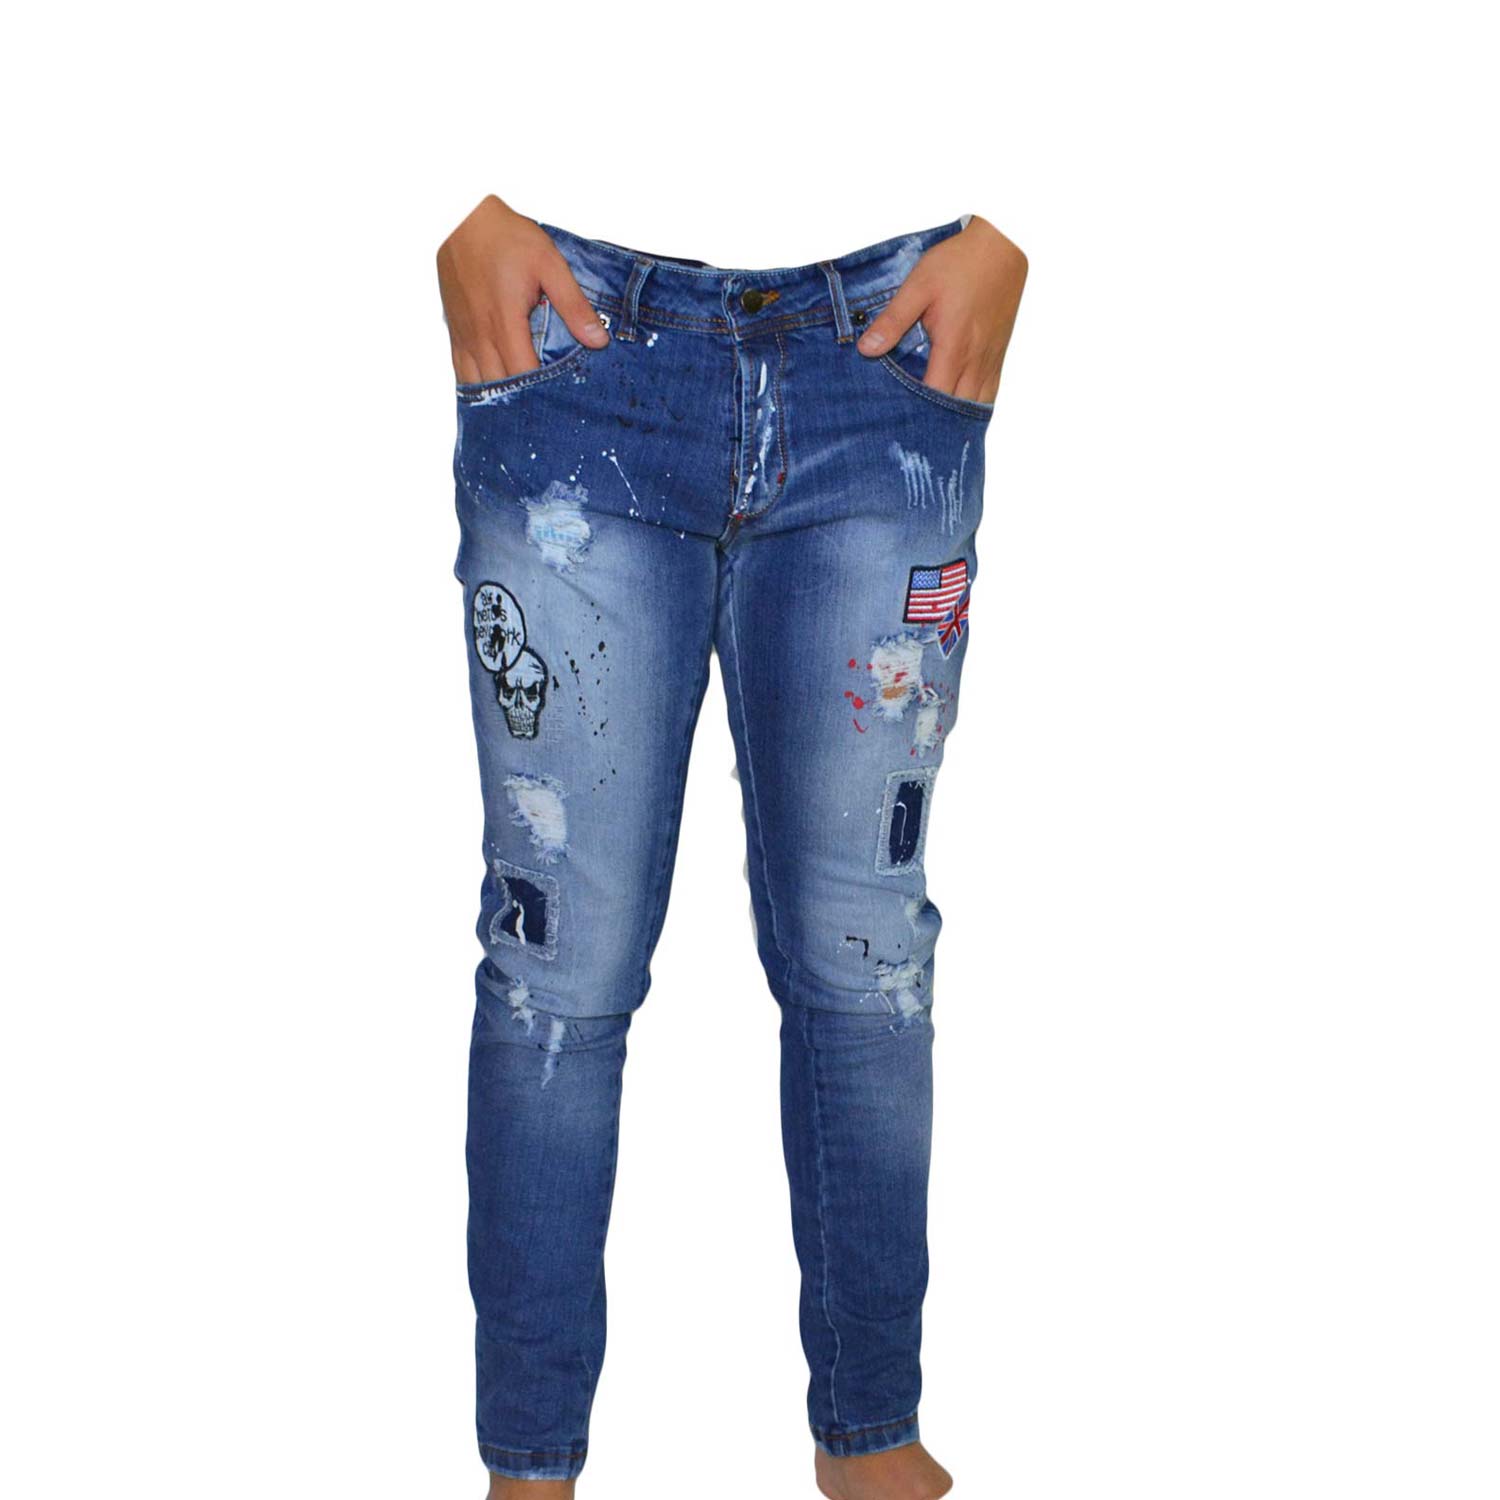 jeans QueBec